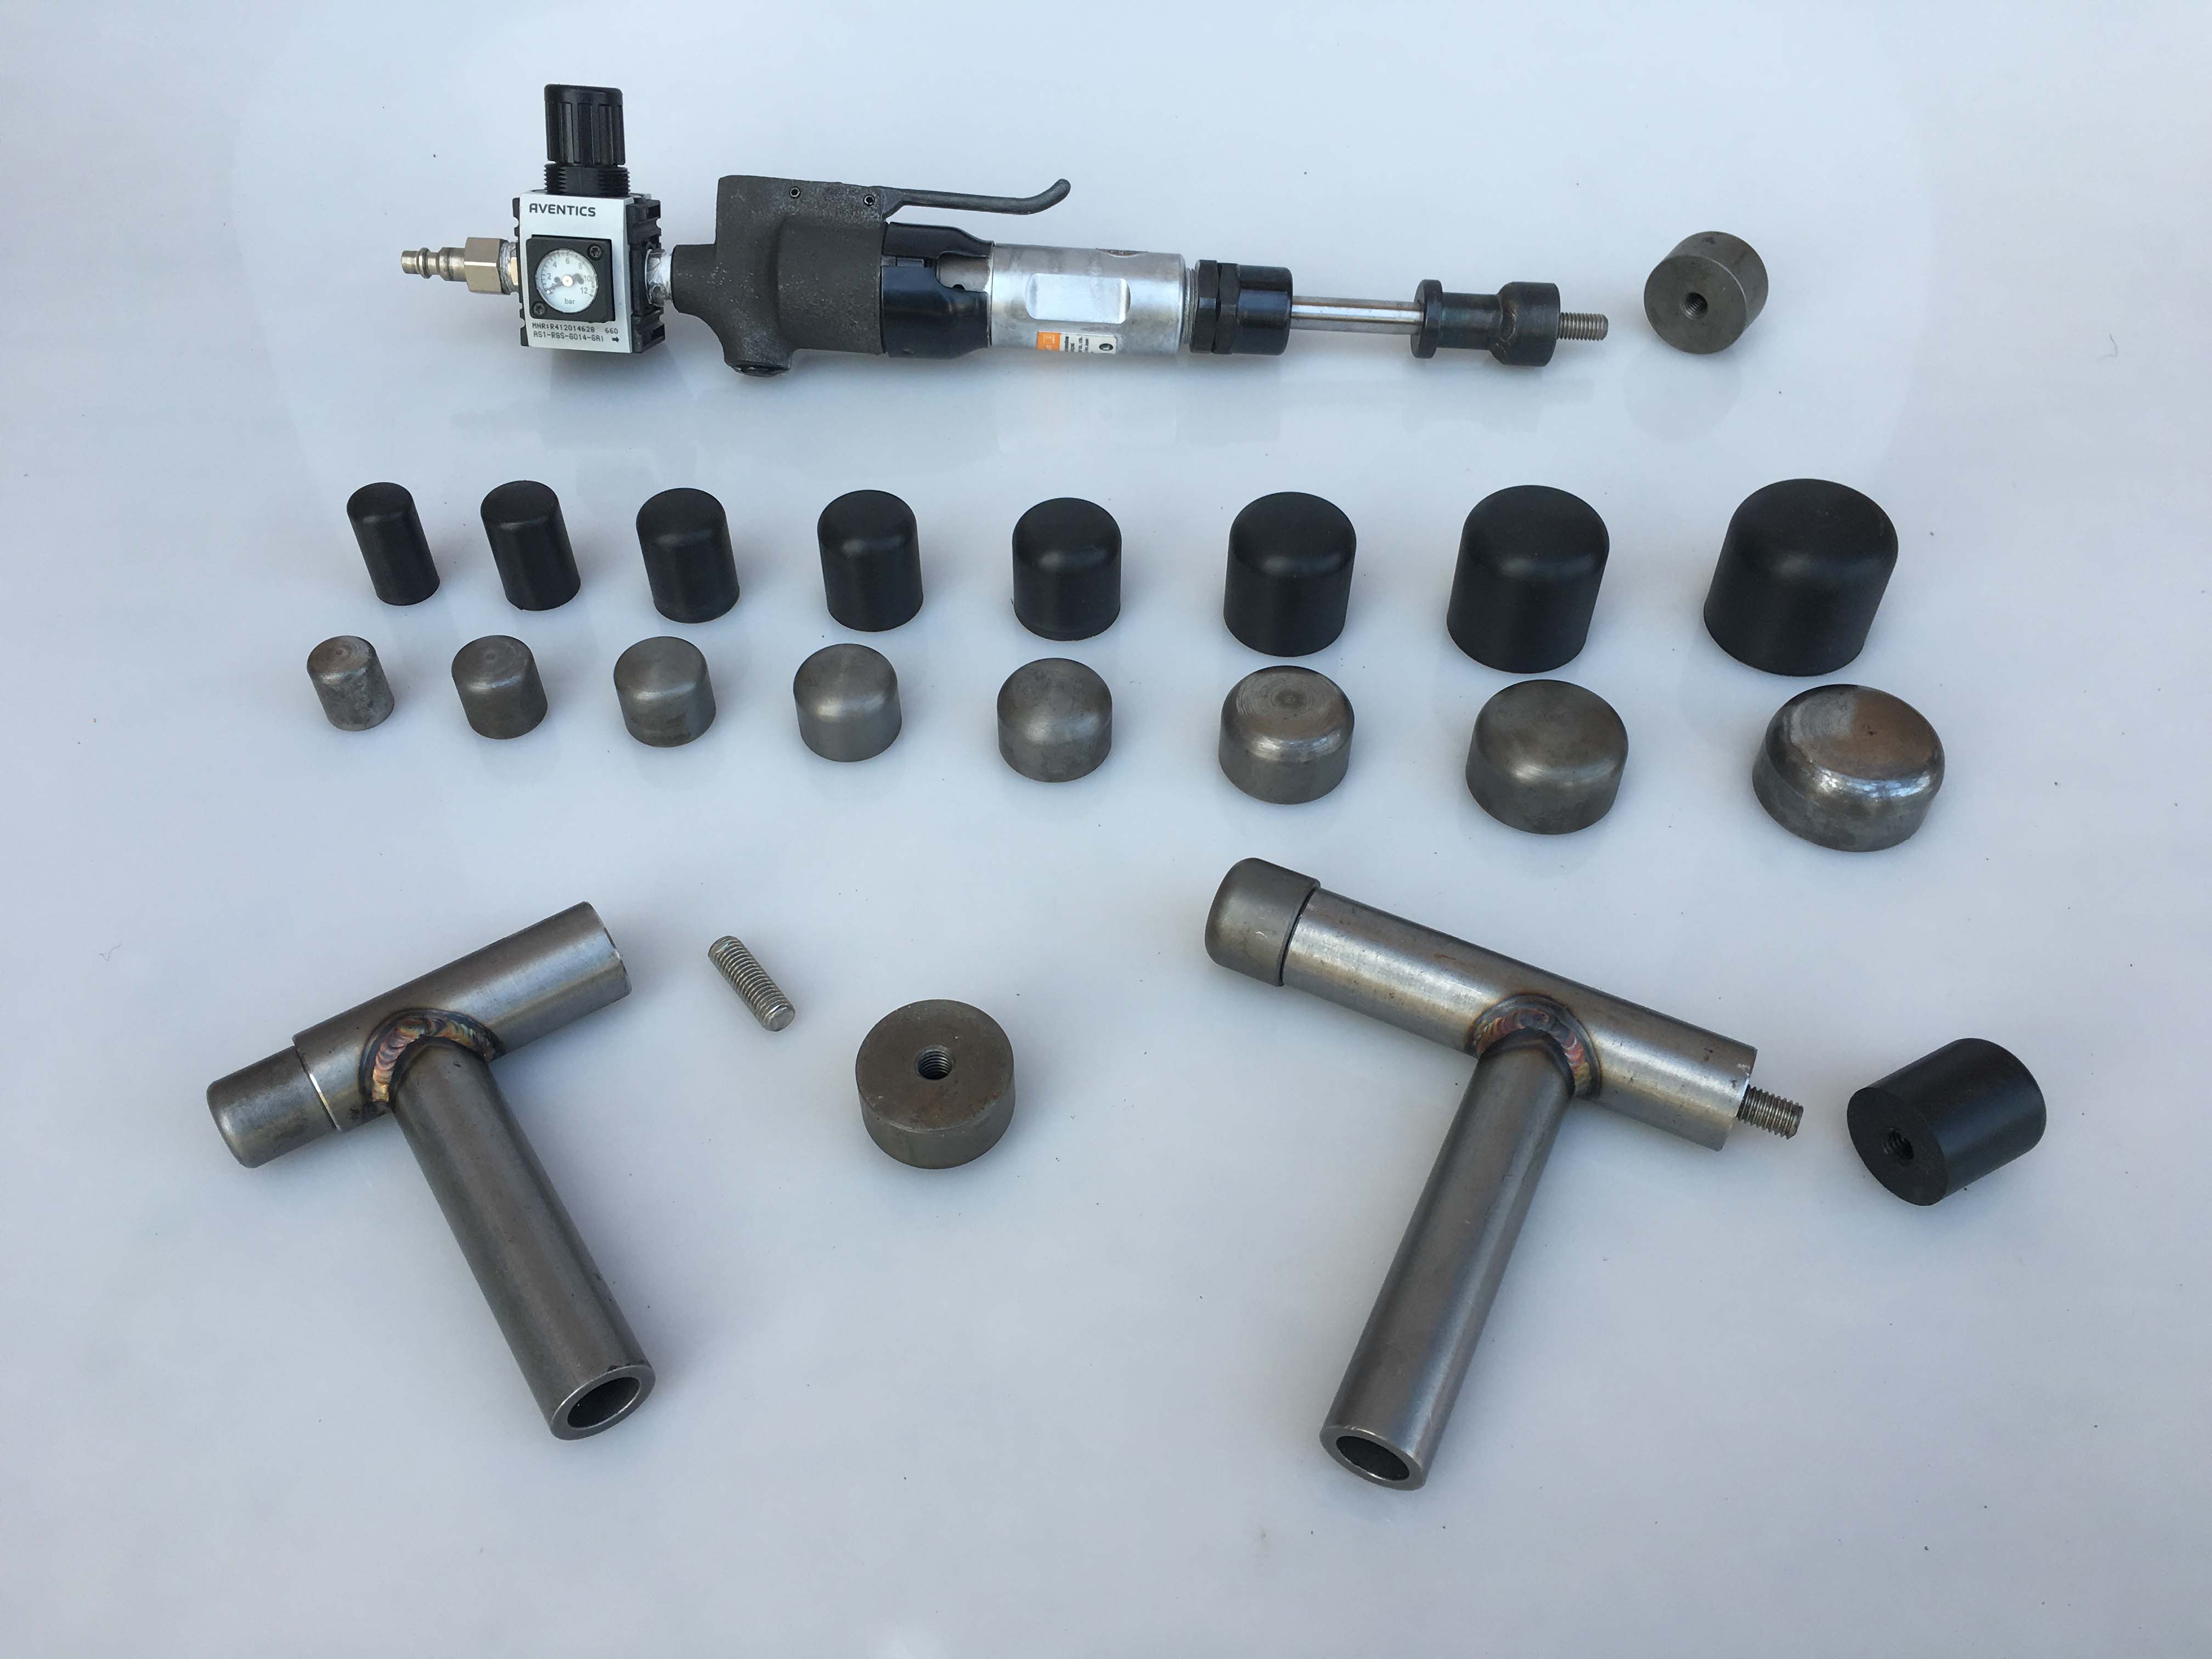 ابزار ساخت هنگ درام - کیت کامل چکش مکانیکی و فلزی